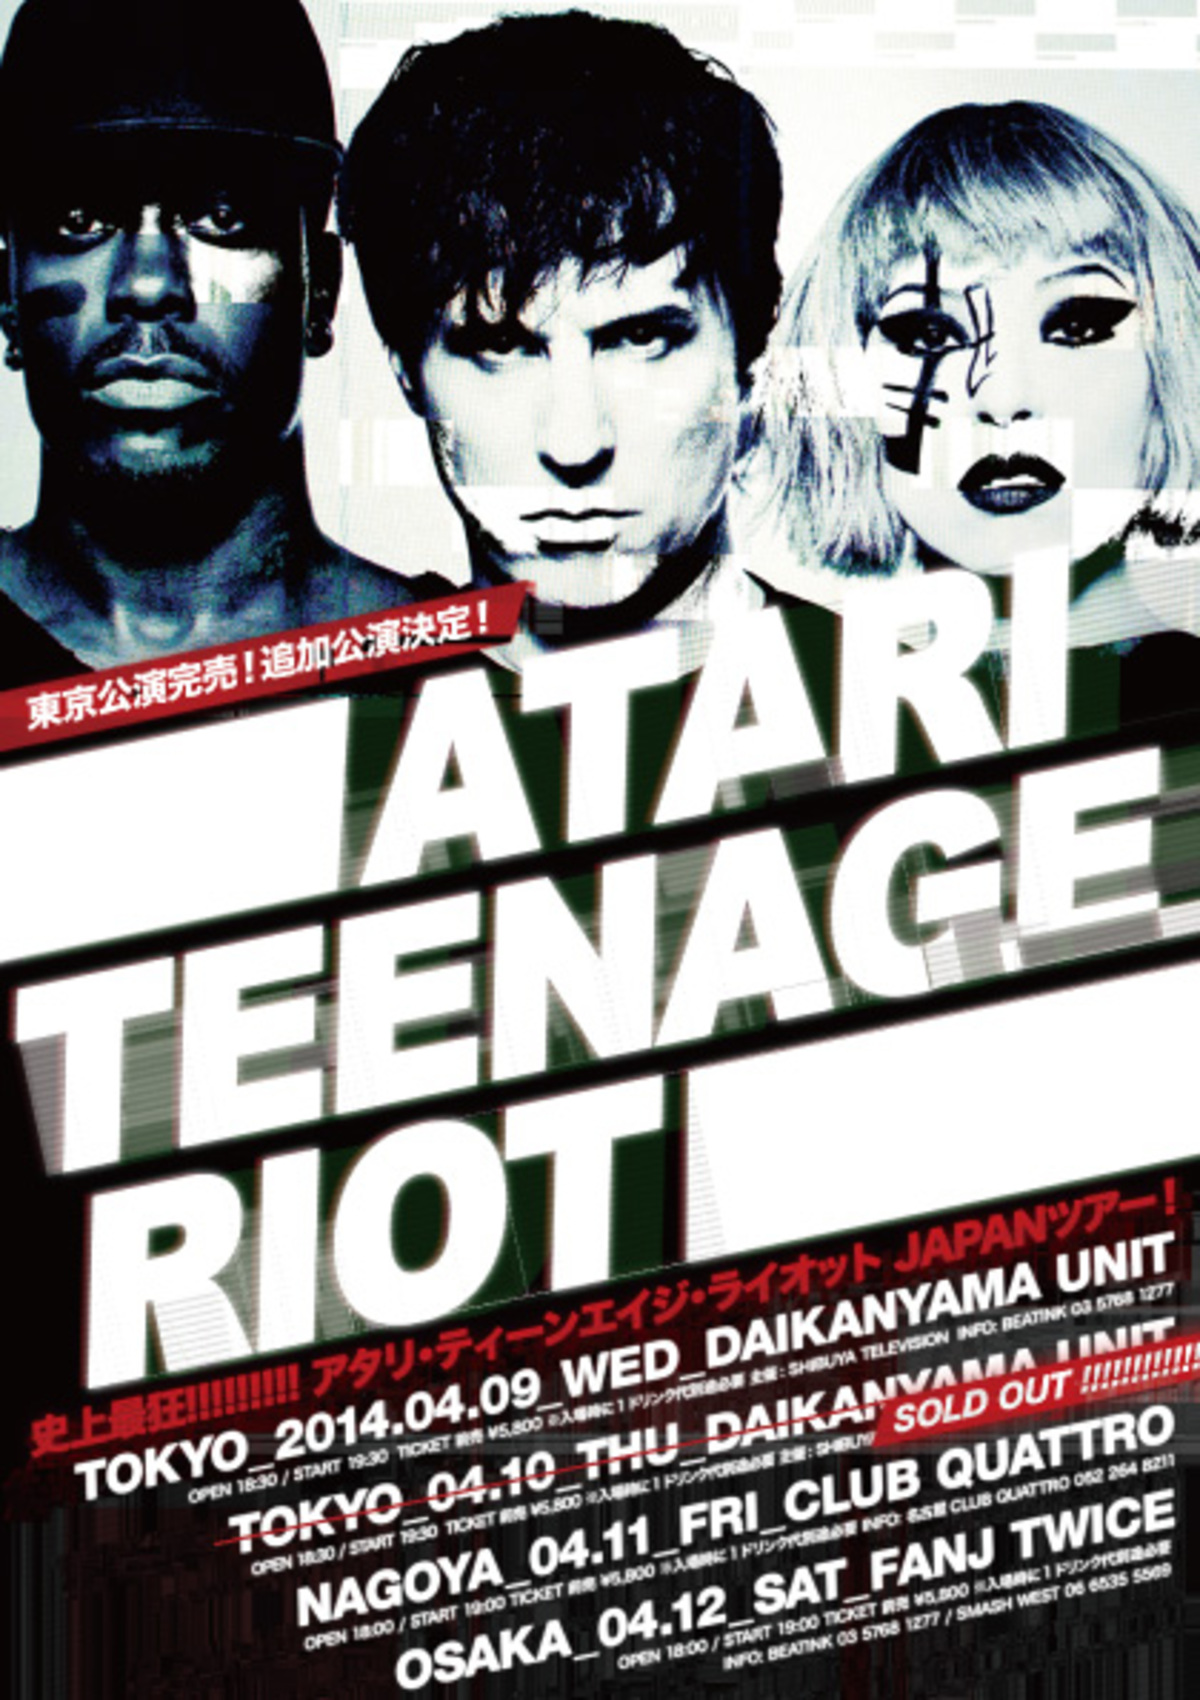 Atari Teenage Riot Reset Review